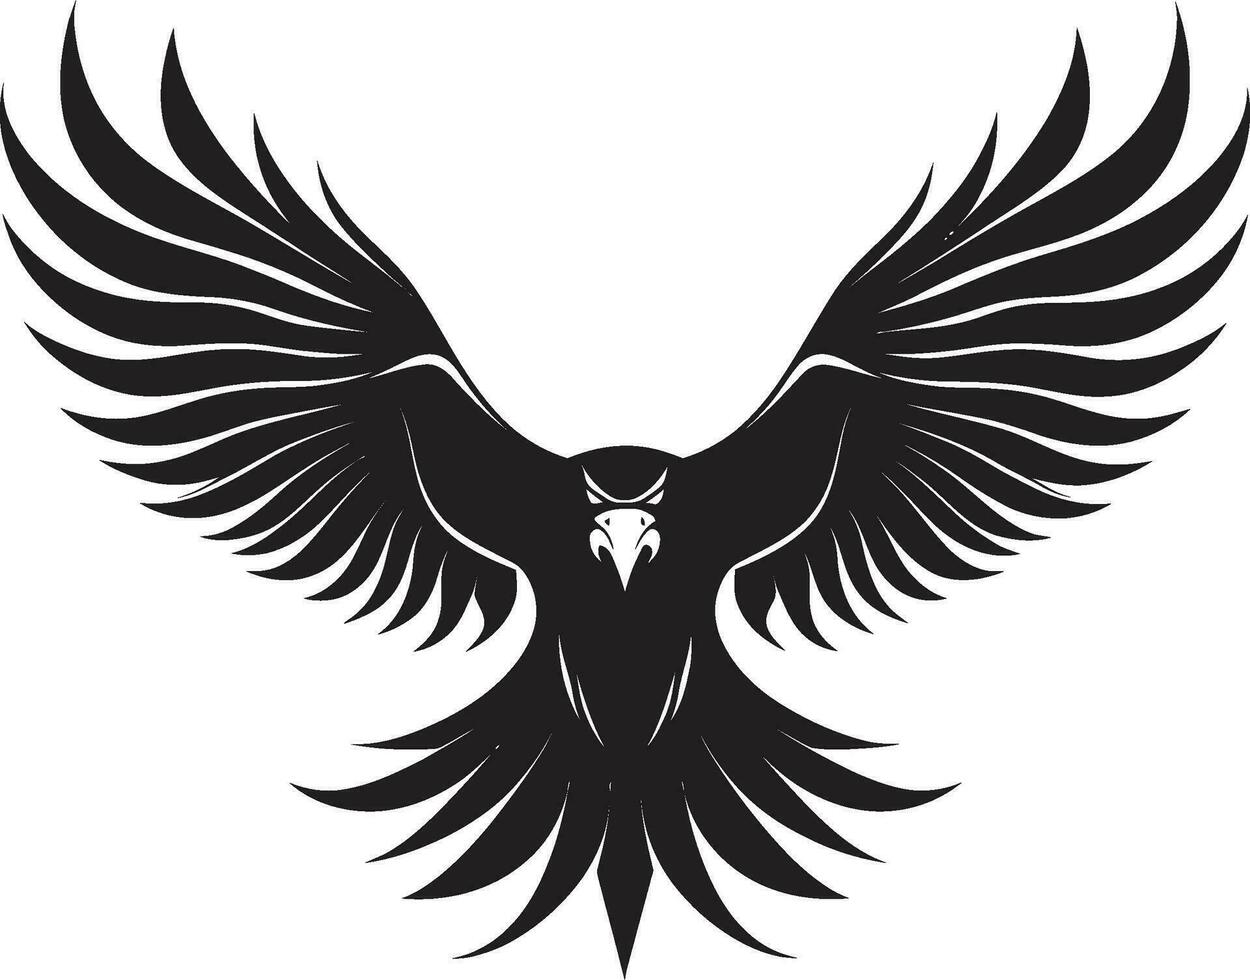 iconico simbolo svelato nero emblema nero e impavido aquila vettore